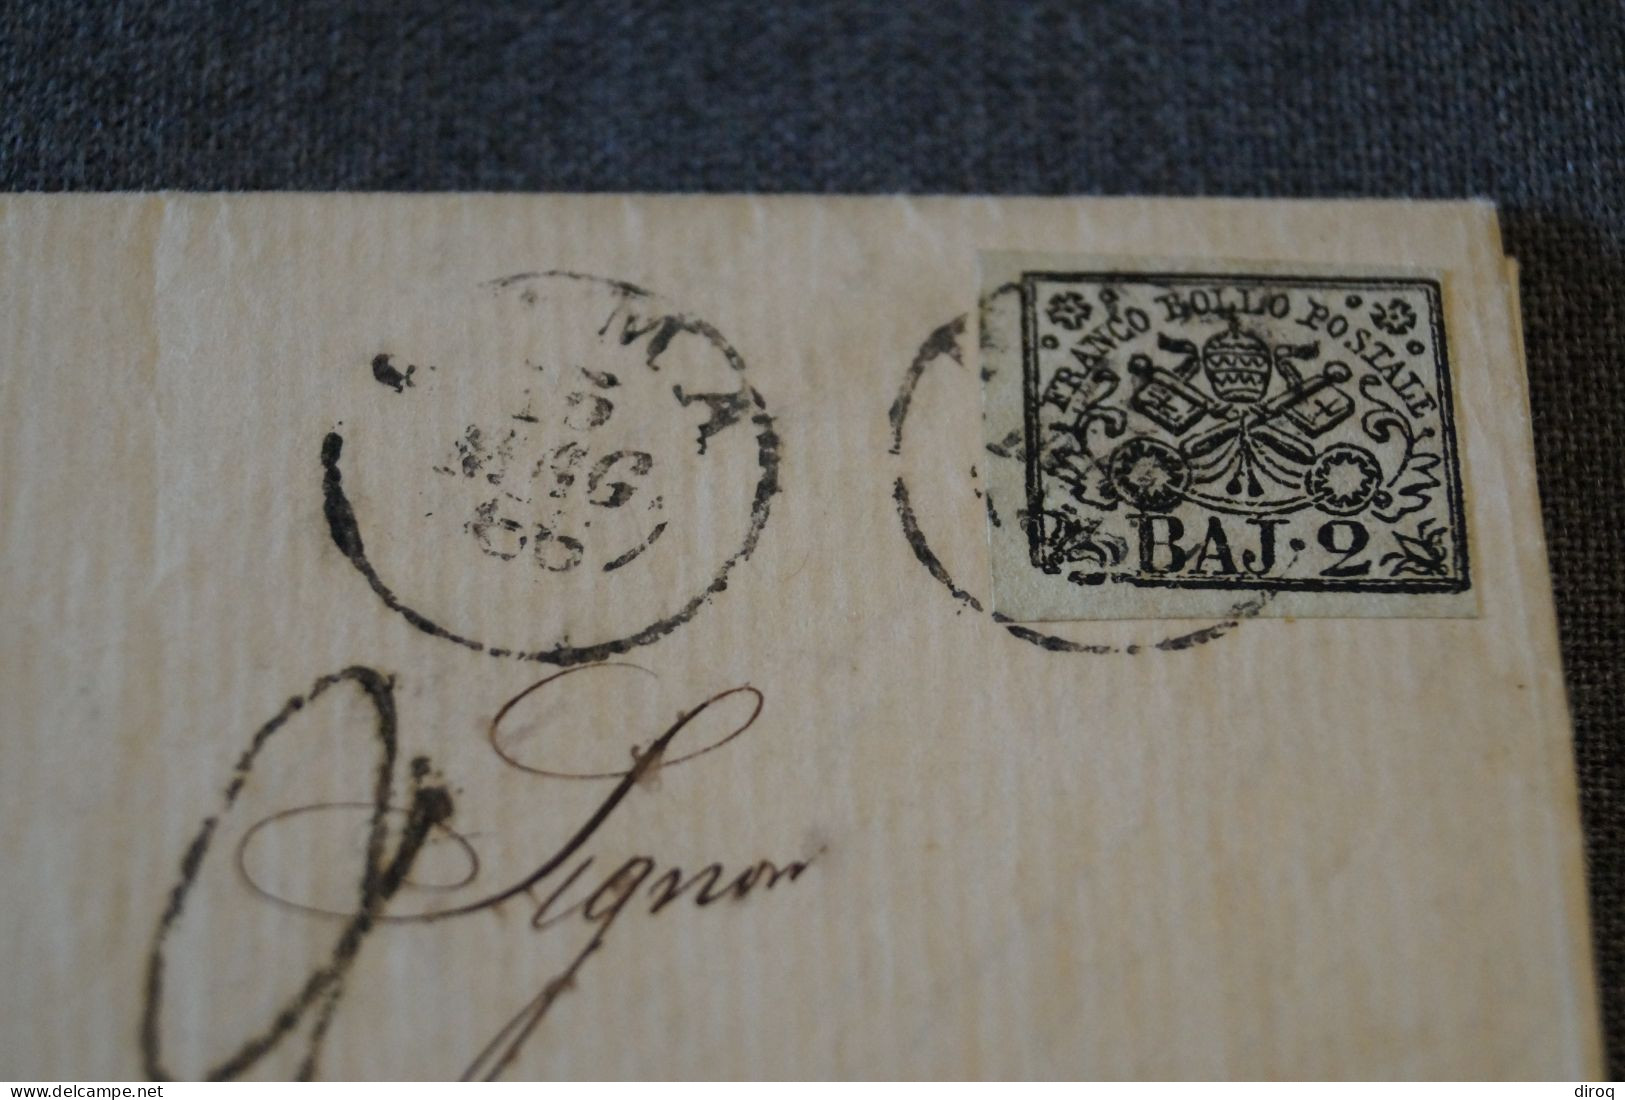 Ancien Envoi Franco Bollo Postale BAJ-2, Italia 1866,courrier à Identifier,pour Collection - Etats Pontificaux